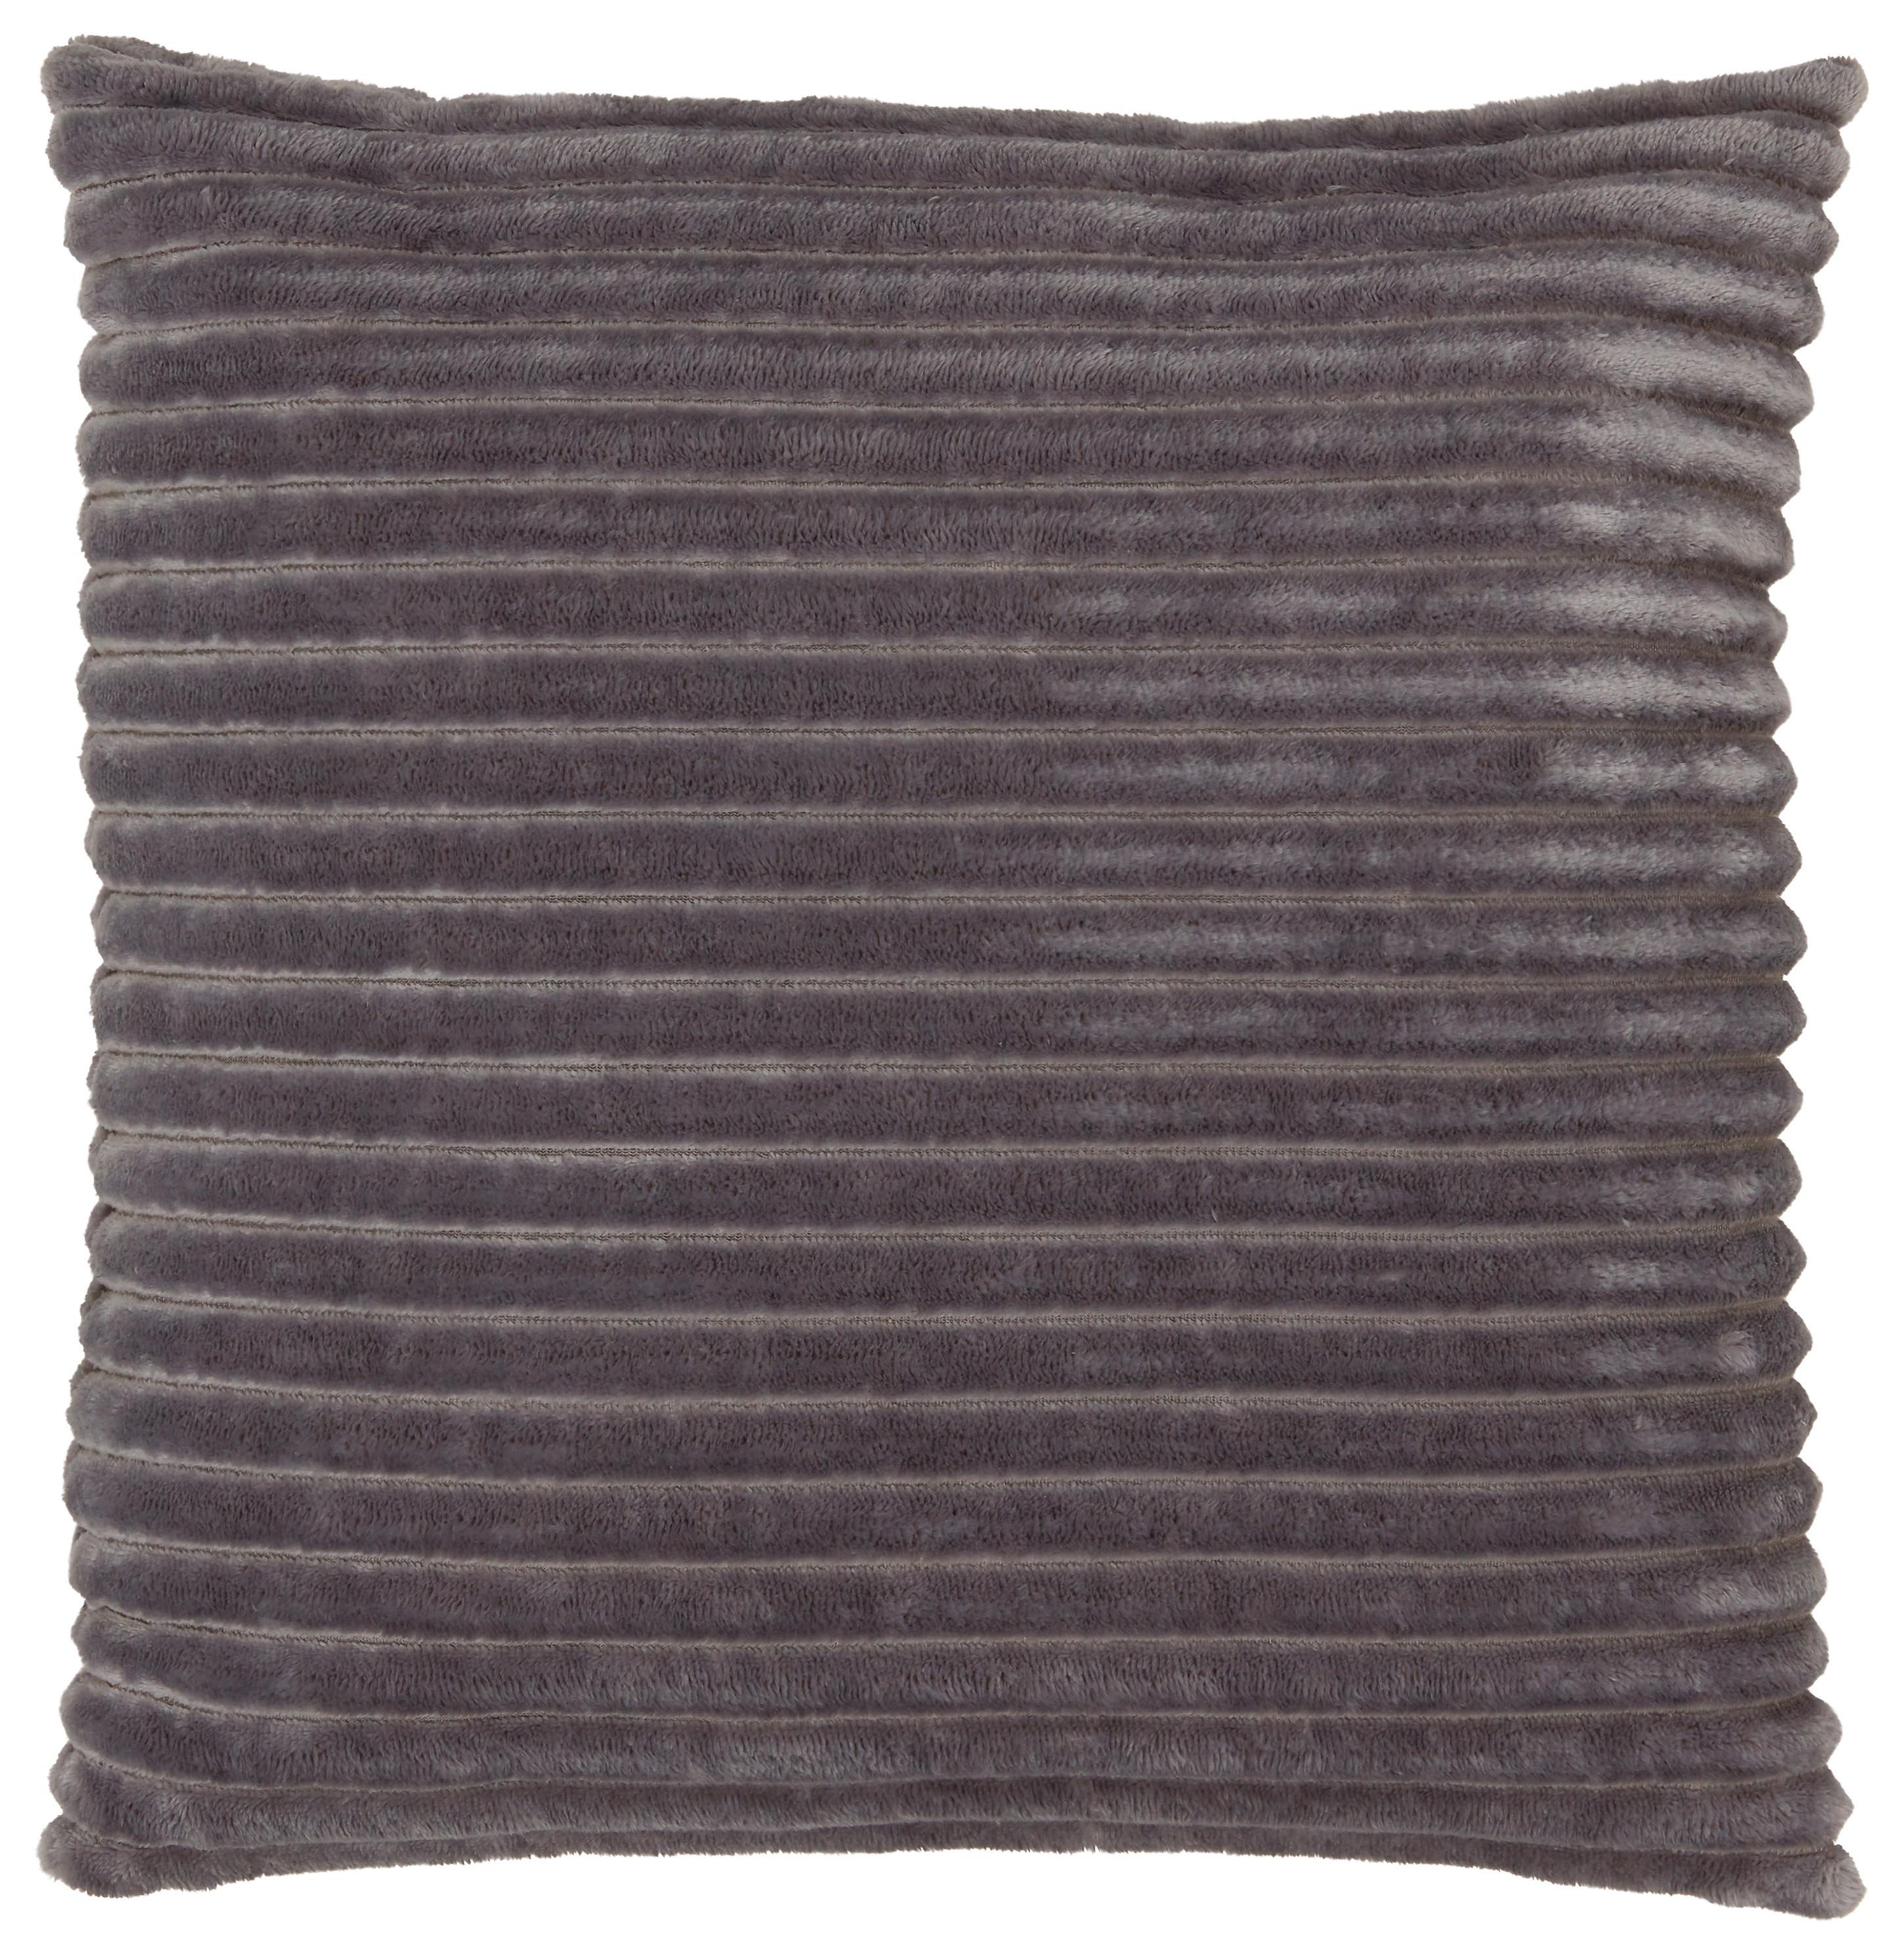 Dekorační Polštář Cordi -Top- - šedá, Konvenční, textil (45/45cm) - Modern Living